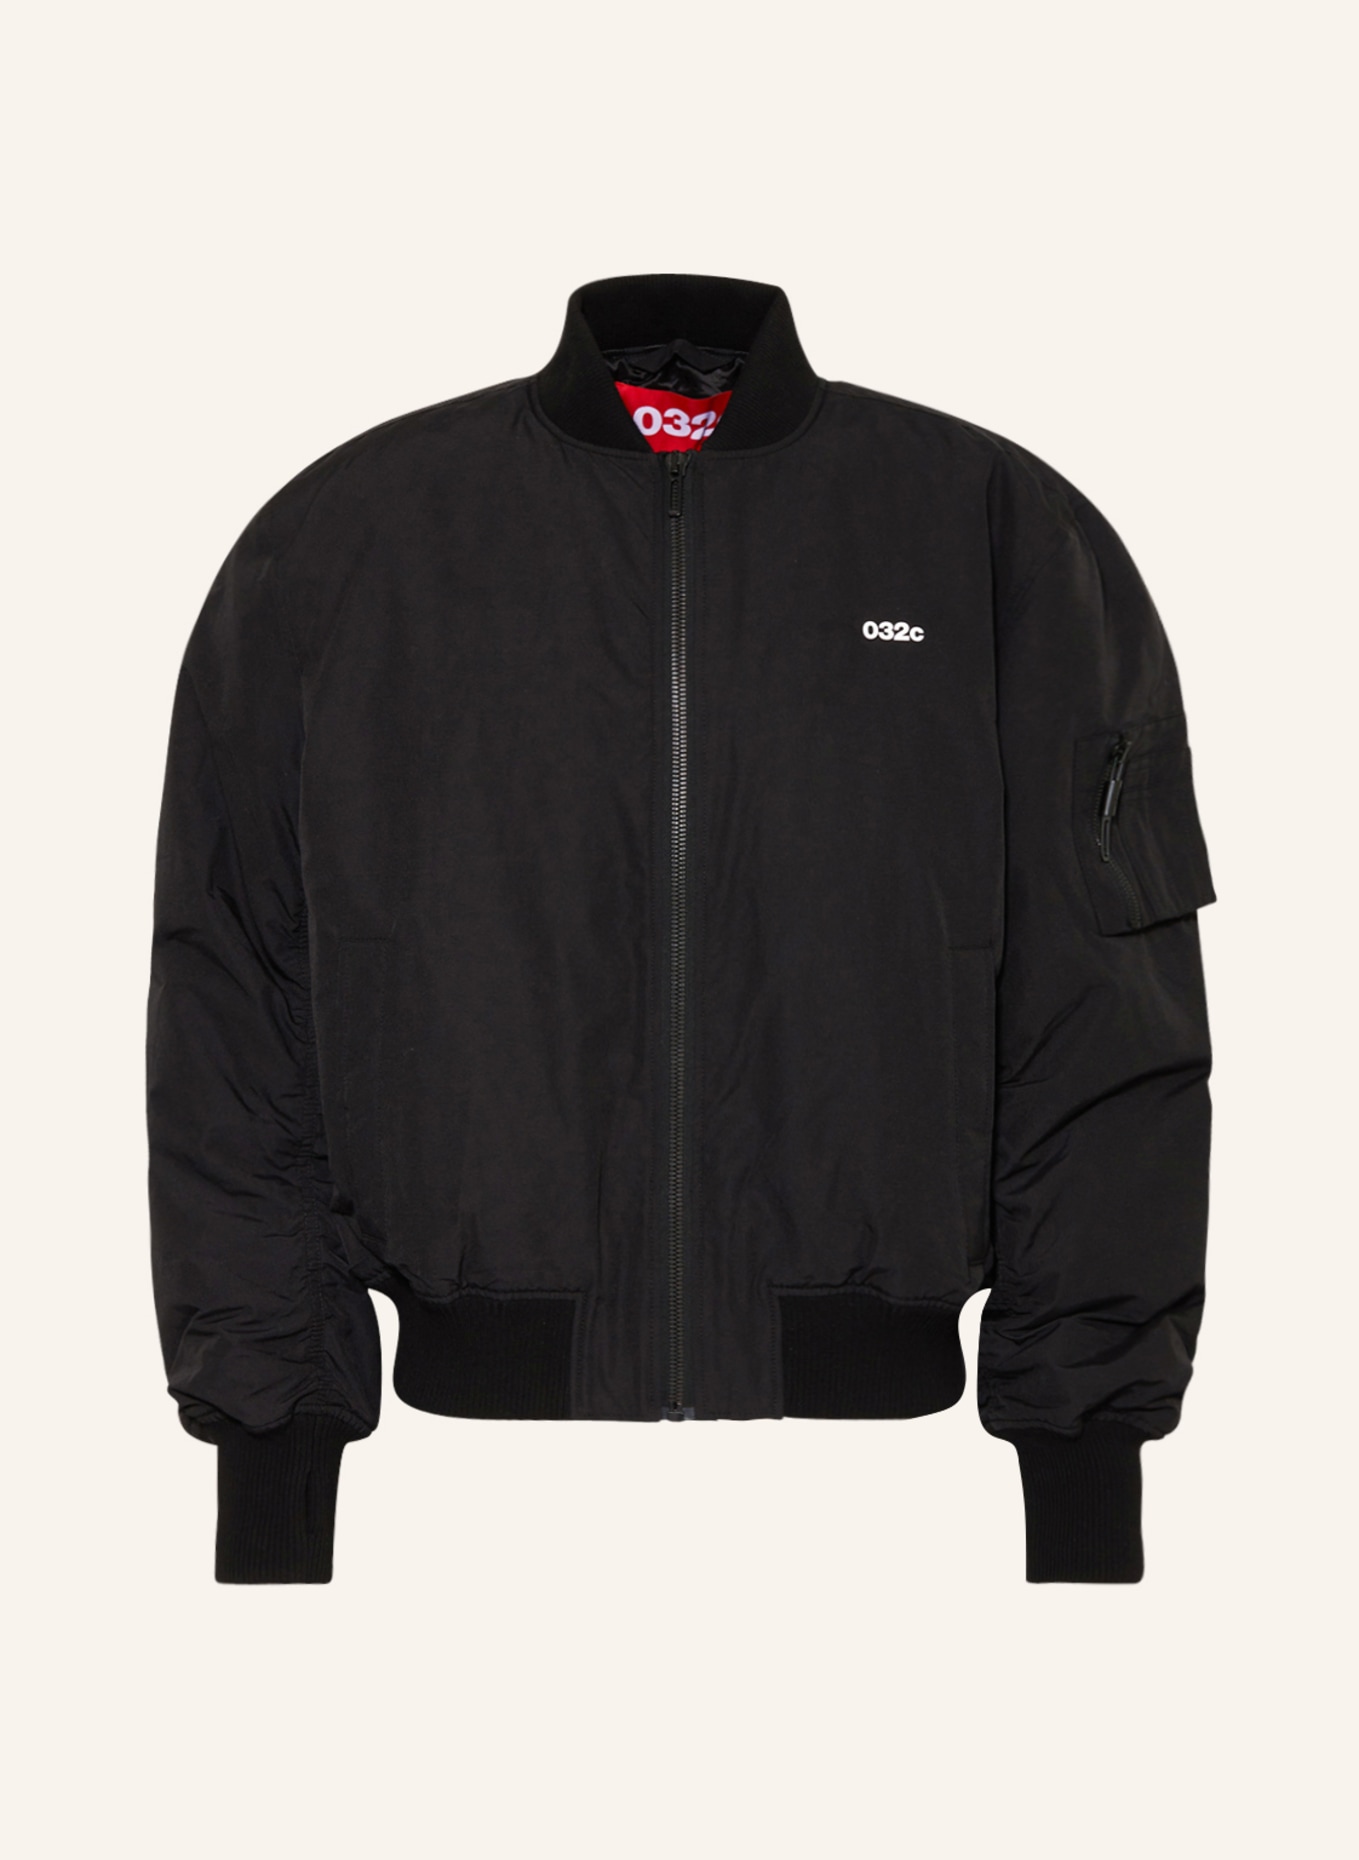 032c Bomber jacket, Color: BLACK (Image 1)